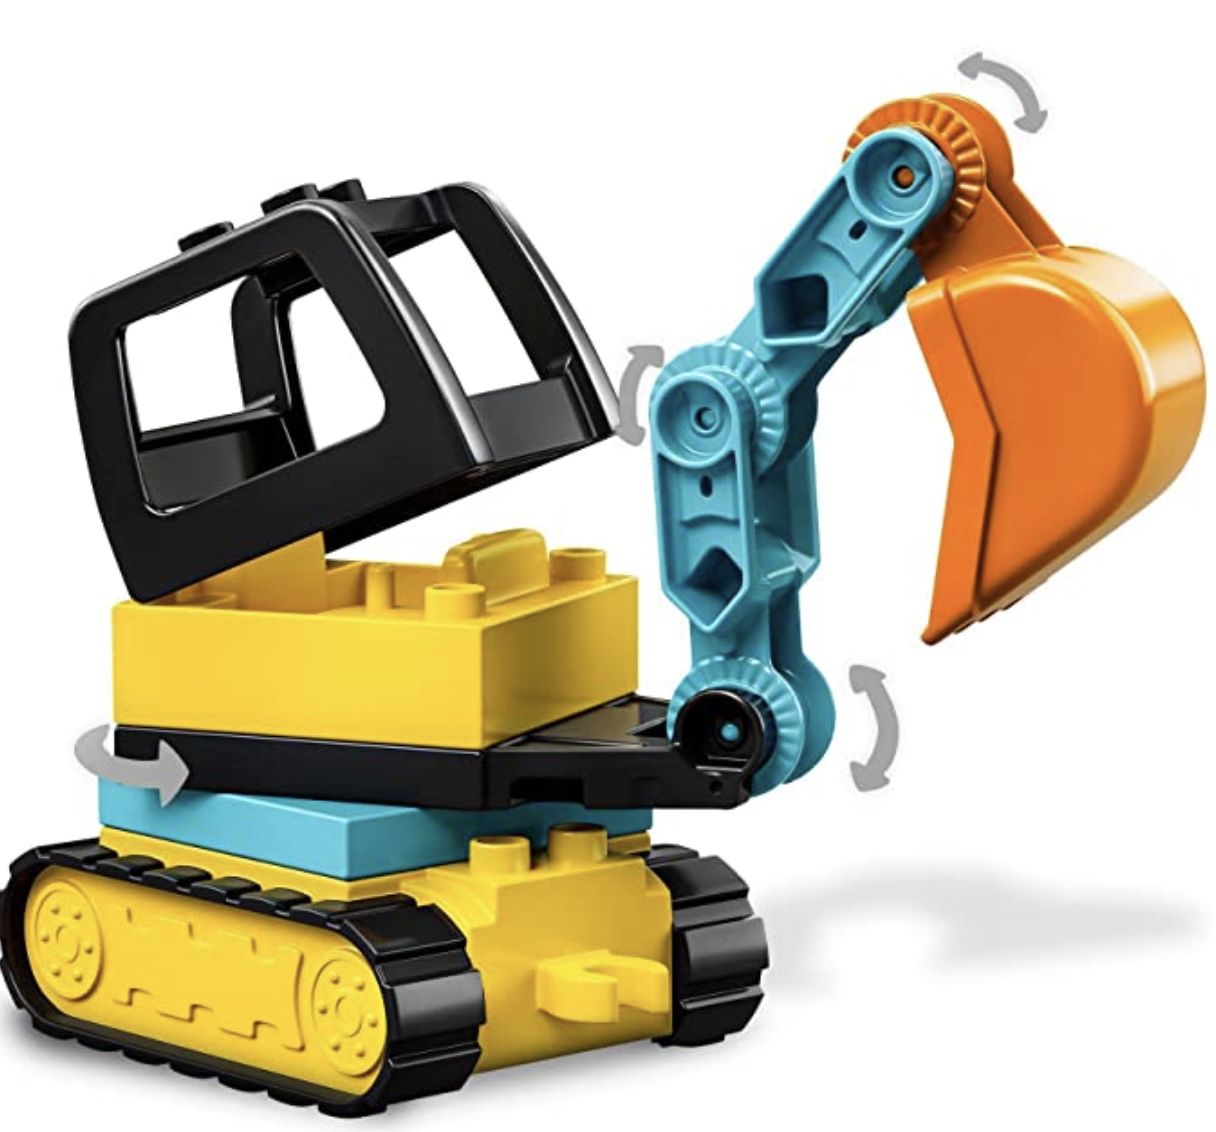 LEGO DUPLO Bagger und Laster Spielzeug mit Baufahrzeug ab 13,49€ (statt 19€)   Prime